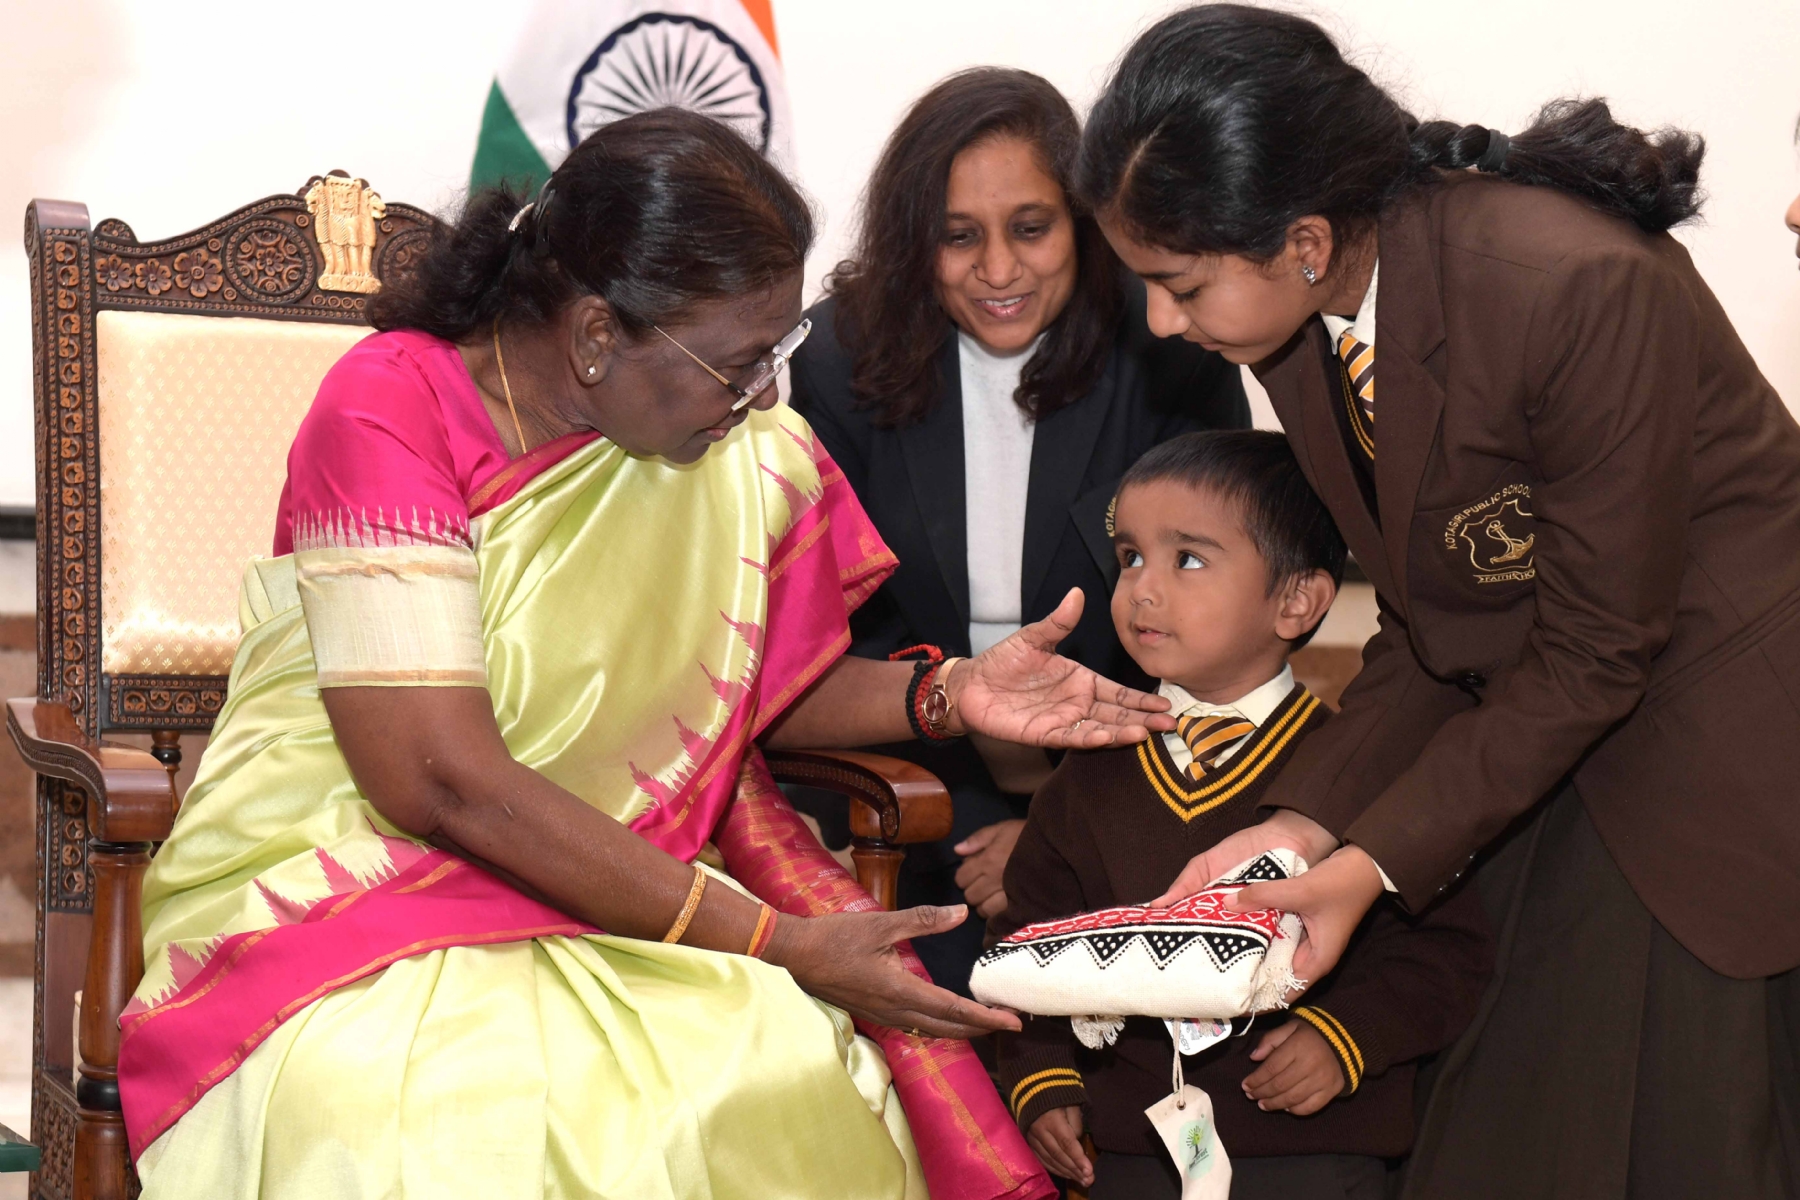 नई दिल्ली में मंगलवार 14 नवंबर को भारत की राष्ट्रपति श्रीमती द्रौपदी मुर्मू से बाल दिवस पर विभिन्न स्कूलों के बच्चों ने की राष्ट्रपति भवन में मुलाका। हिन्दुस्थान समाचार फोटो गणेश बिष्ट